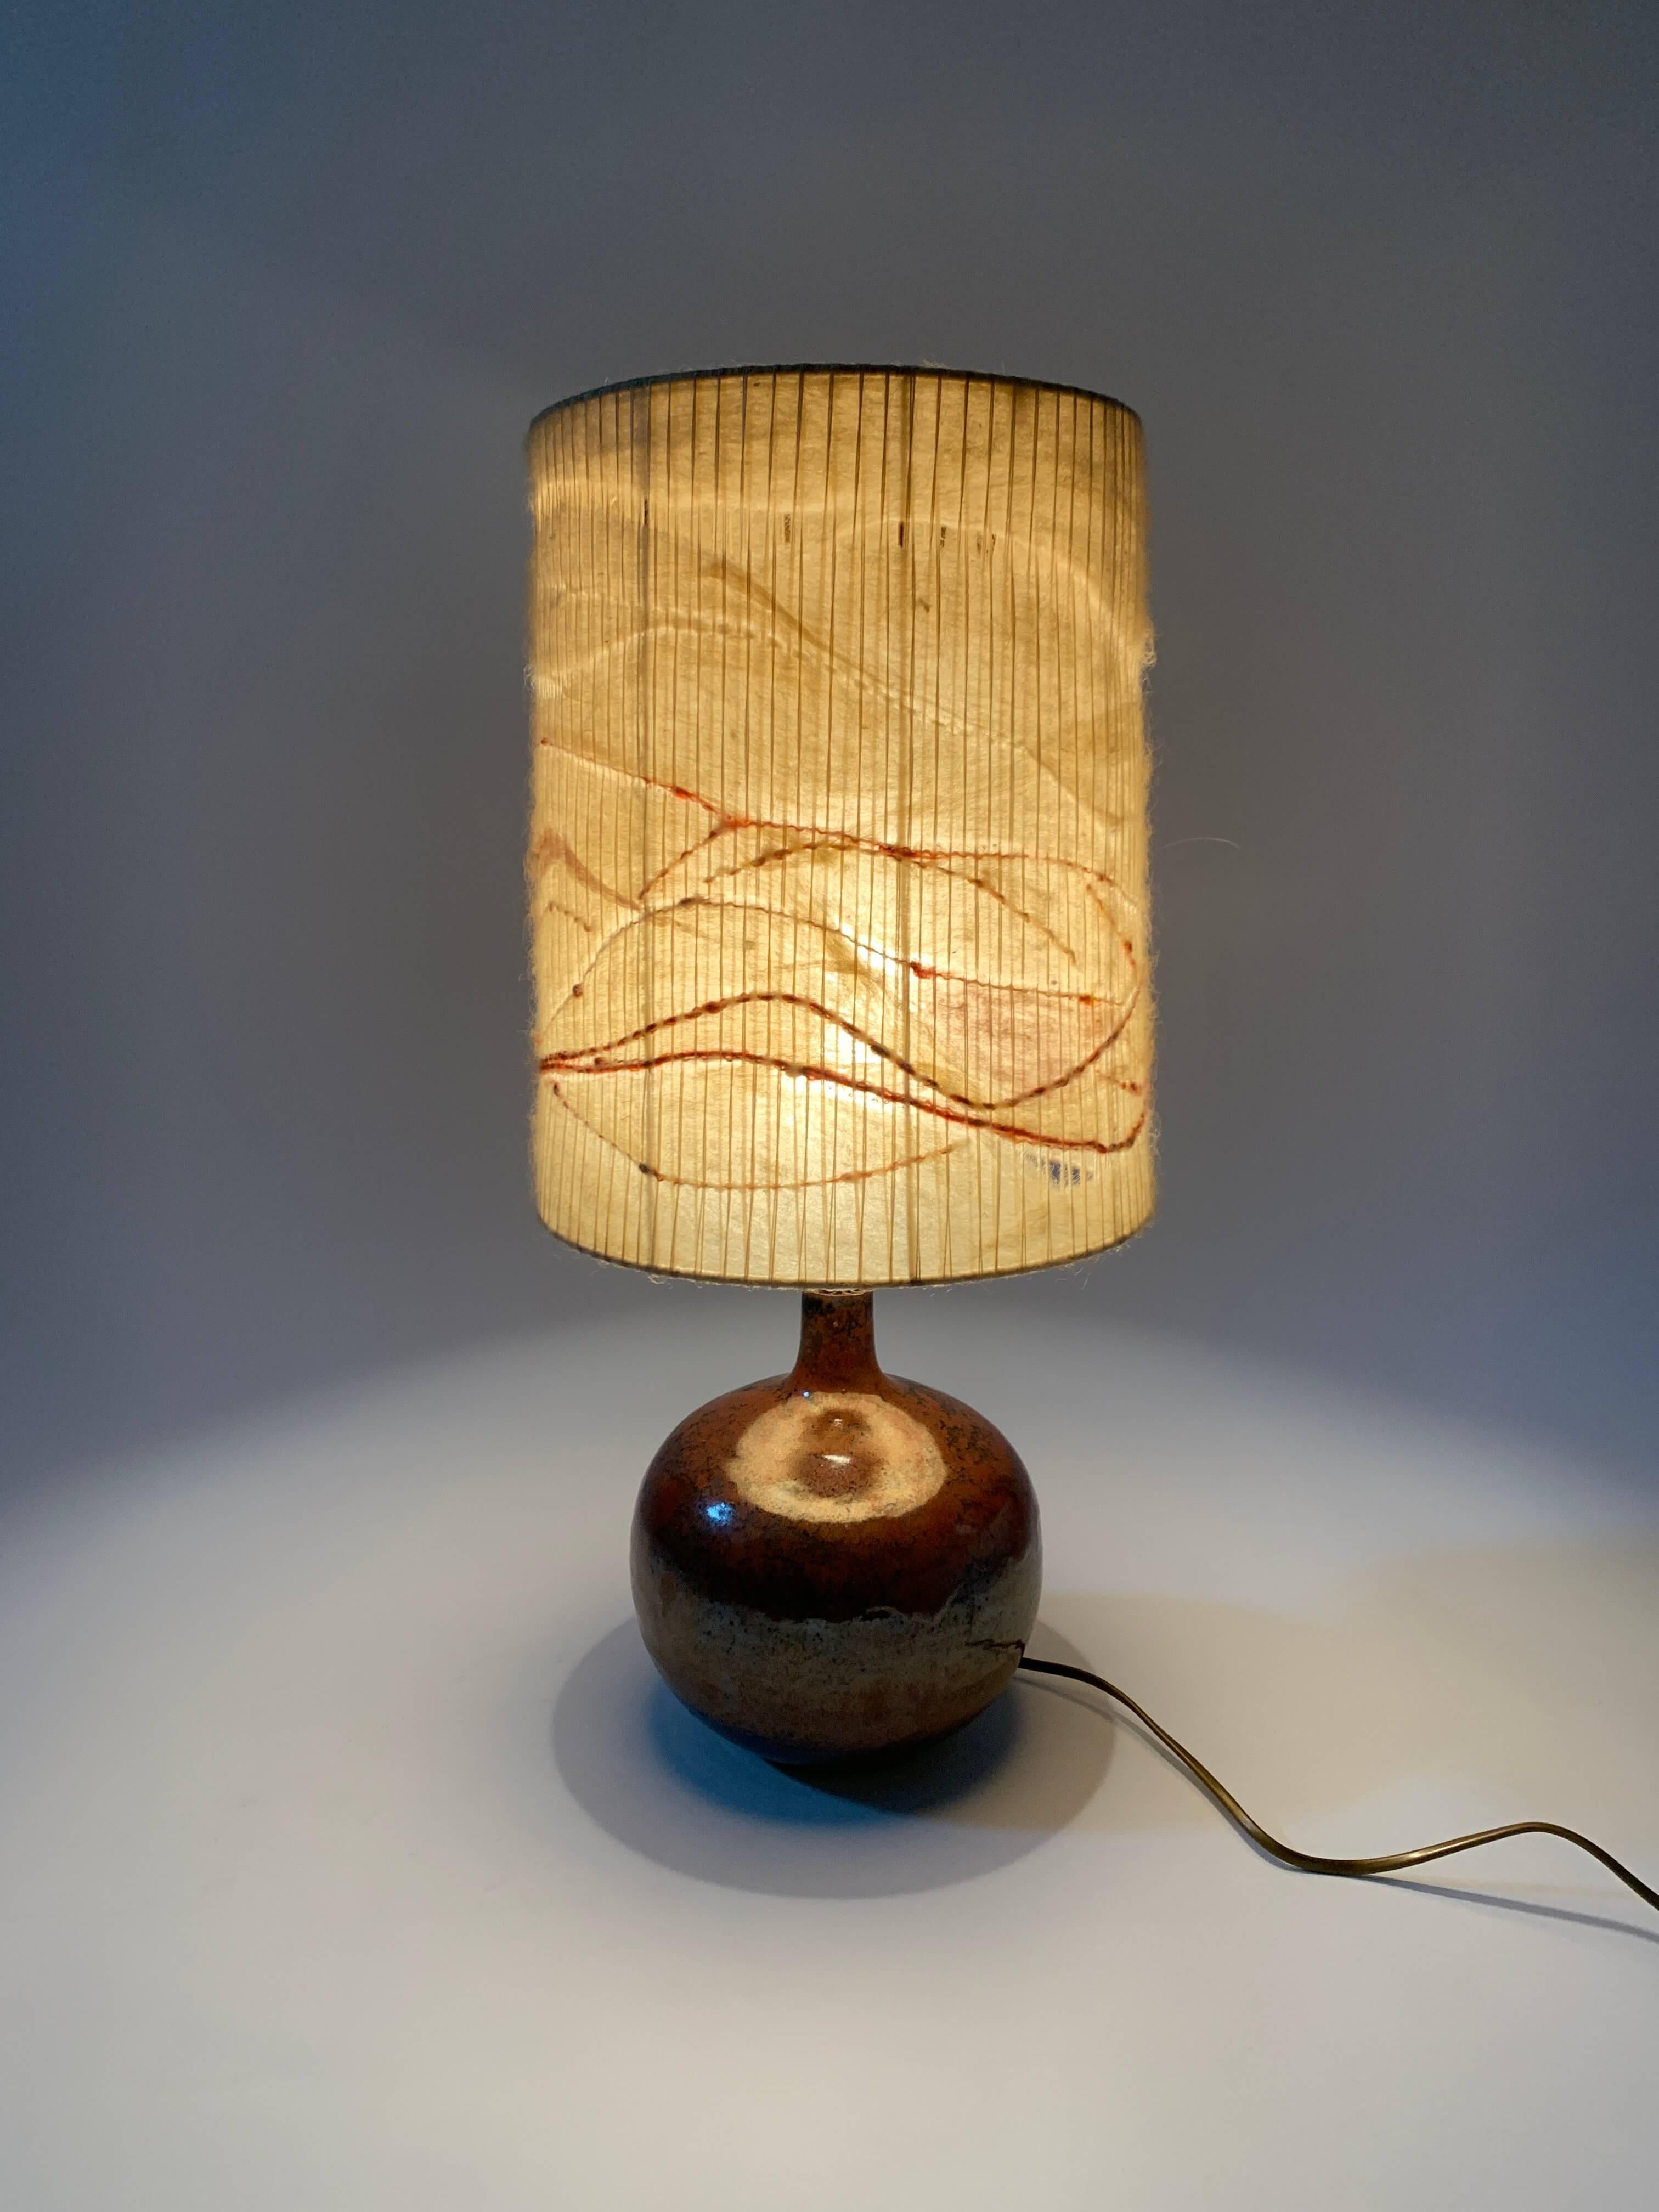 Annie Maume (1945 - )
Schule La Borne.

Fein emaillierte Steingutlampe, verziert mit einem zarten Dekor aus Asche-Emaille in subtilen Schattierungen von Weintrub, Braun und Schwarz.
Die Lampe mit ihrem originalen Lampenschirm ist ein seltenes